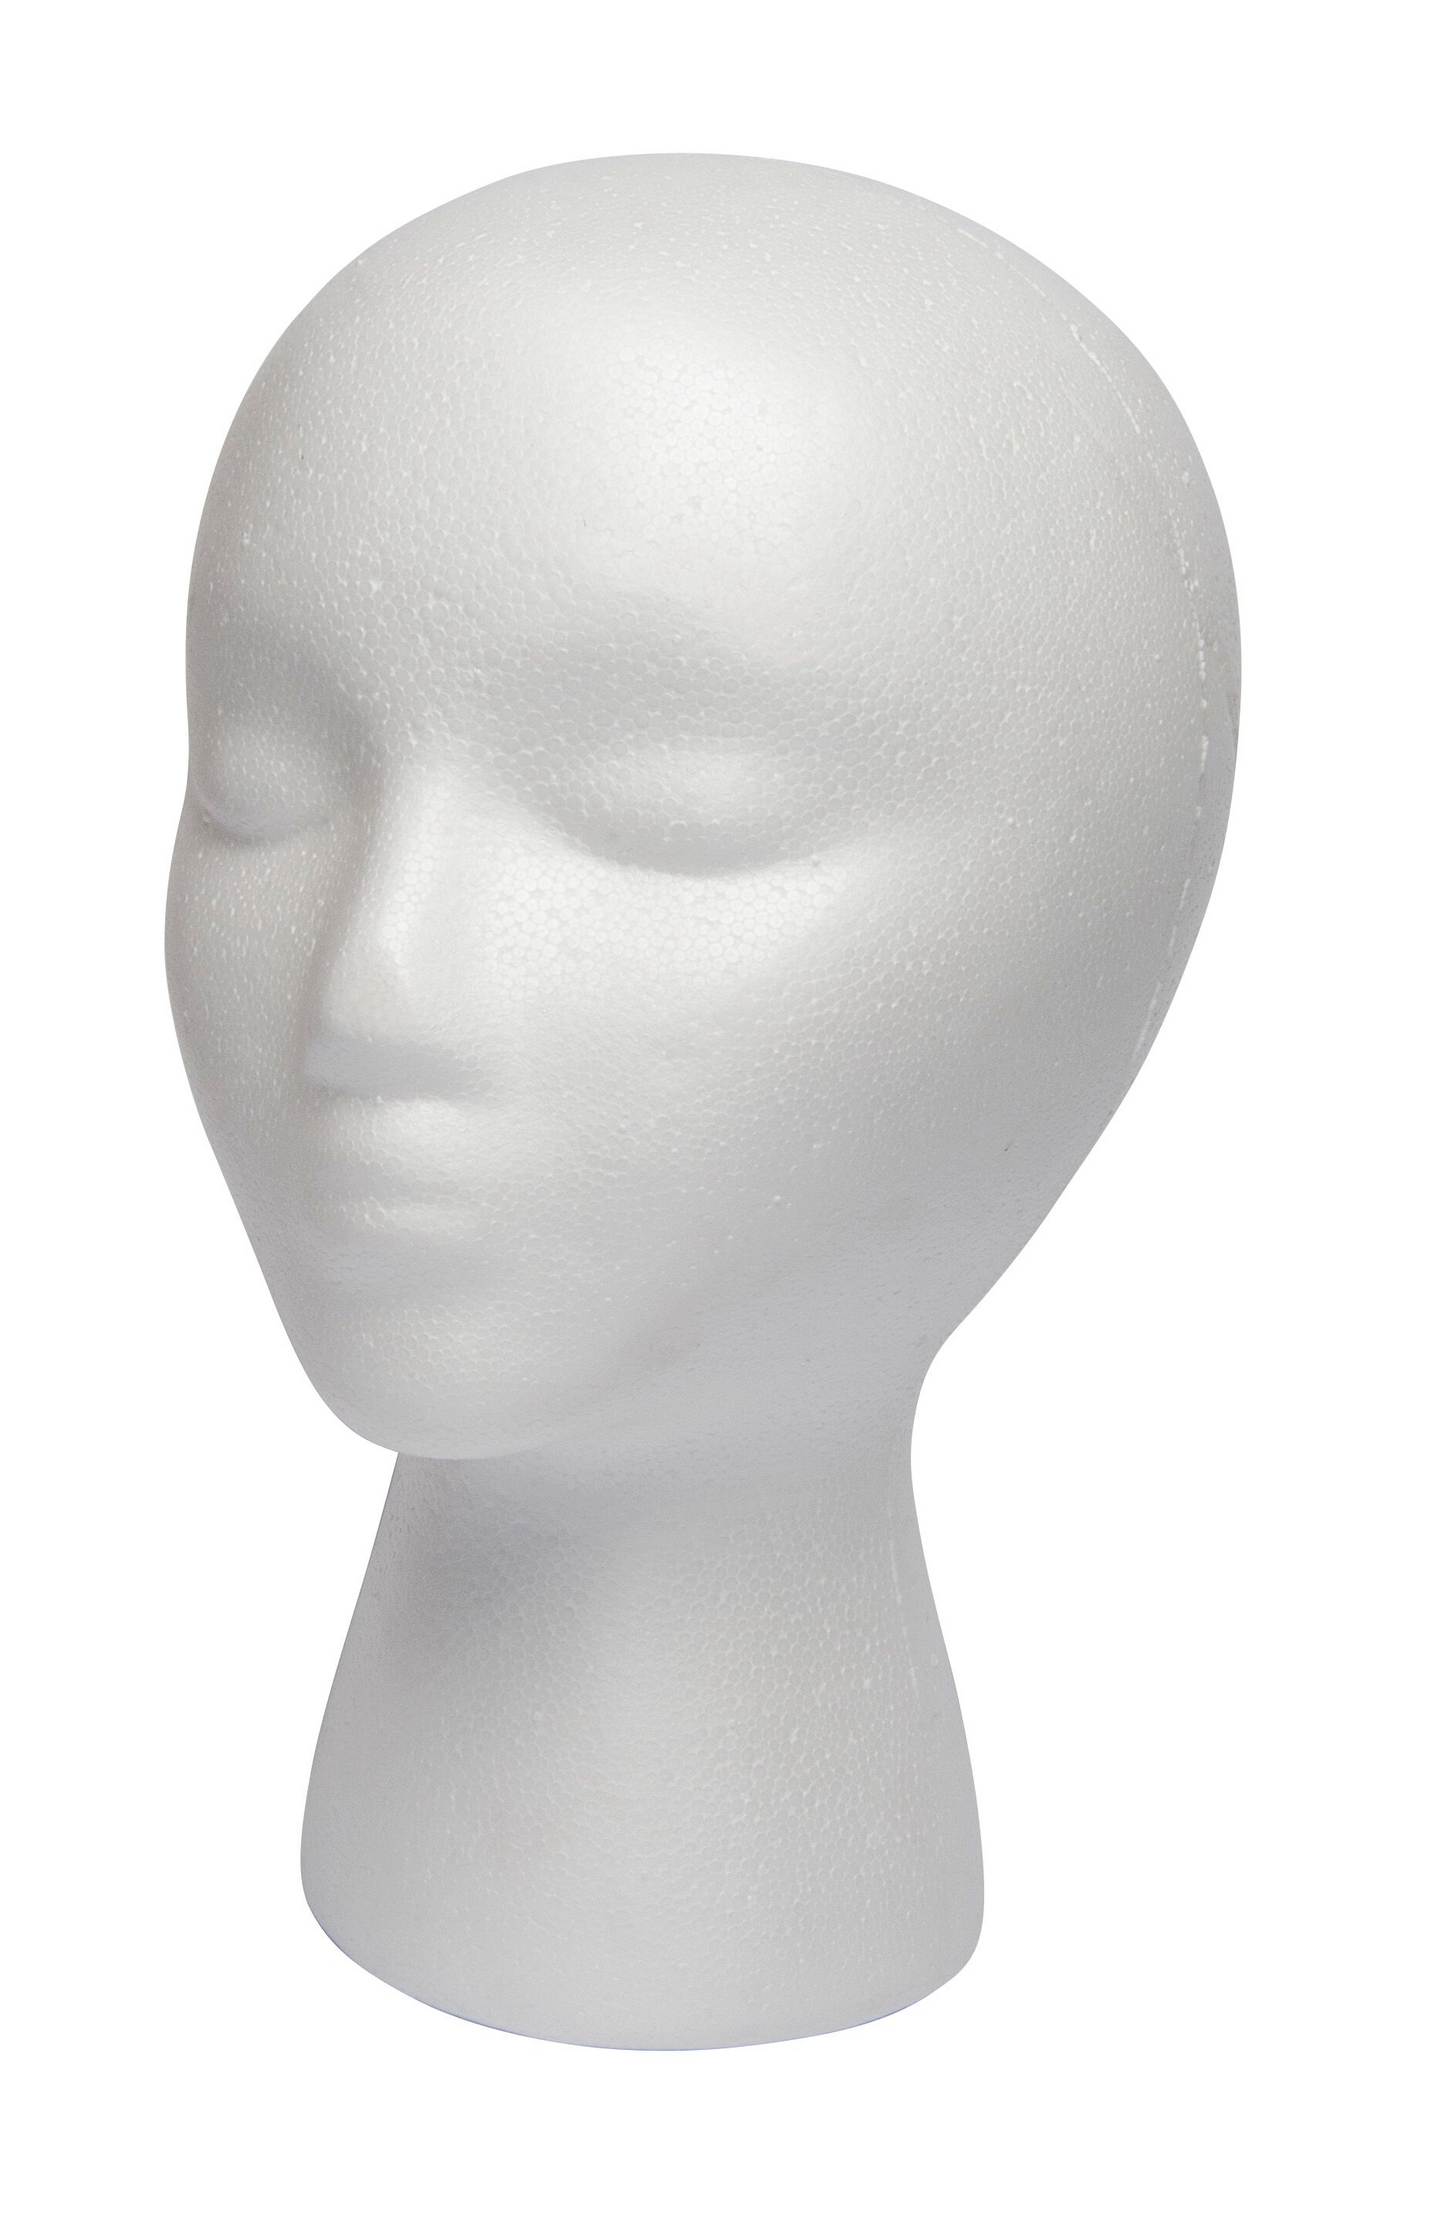 Diane #DES001 Styrofoam Head 11 inch - White